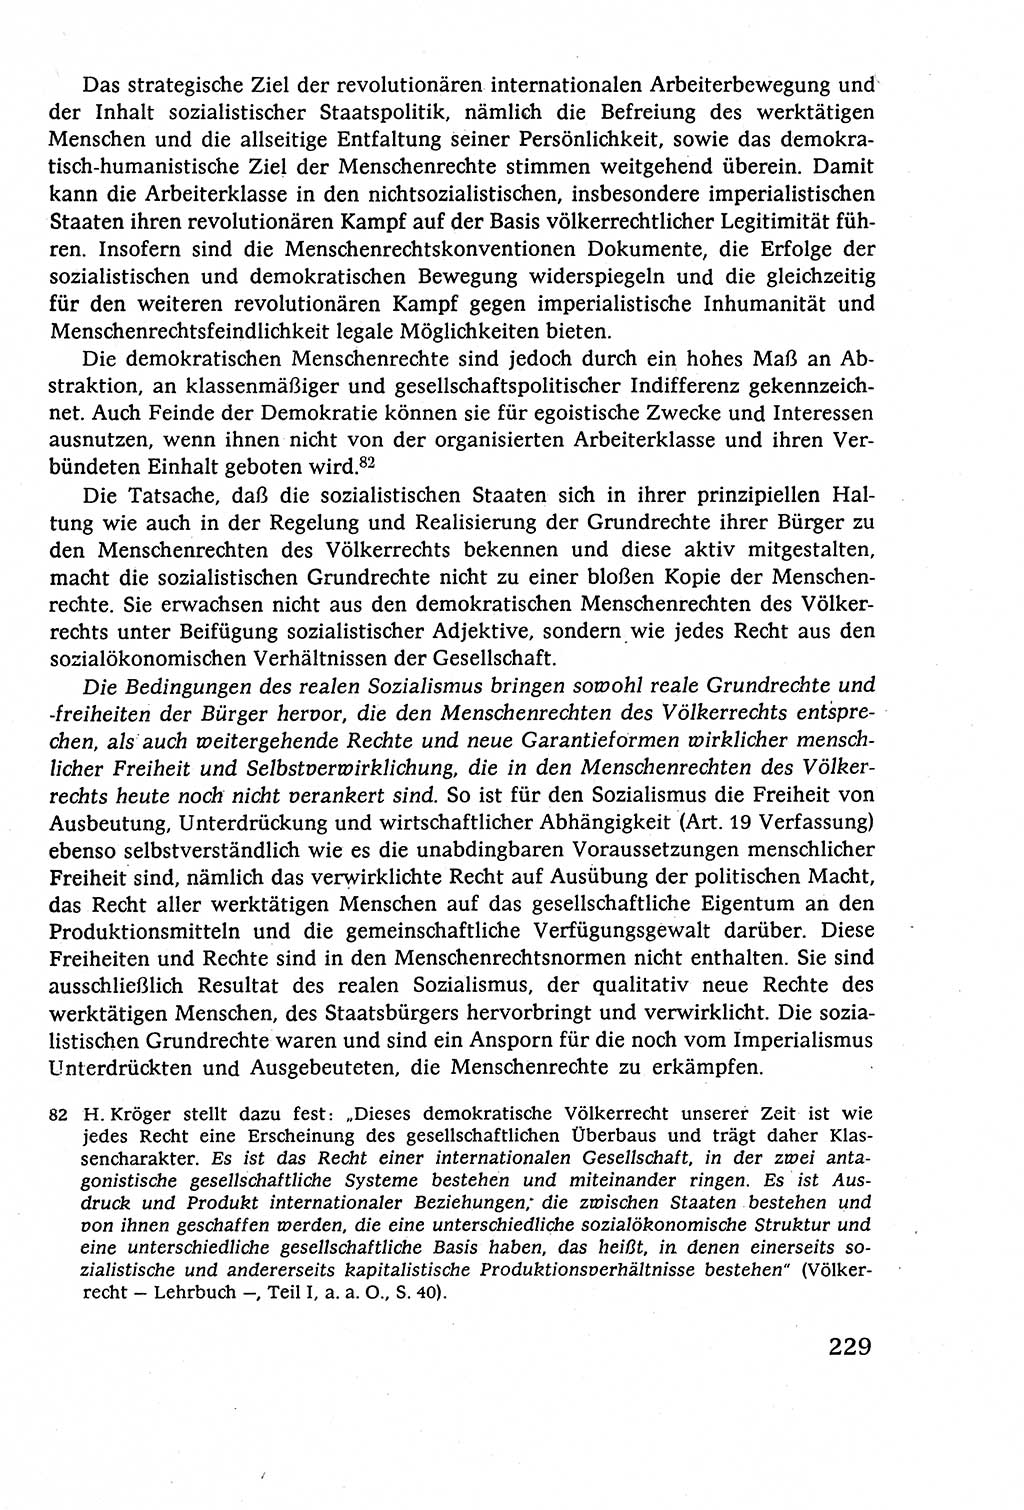 Staatsrecht der DDR (Deutsche Demokratische Republik), Lehrbuch 1977, Seite 229 (St.-R. DDR Lb. 1977, S. 229)